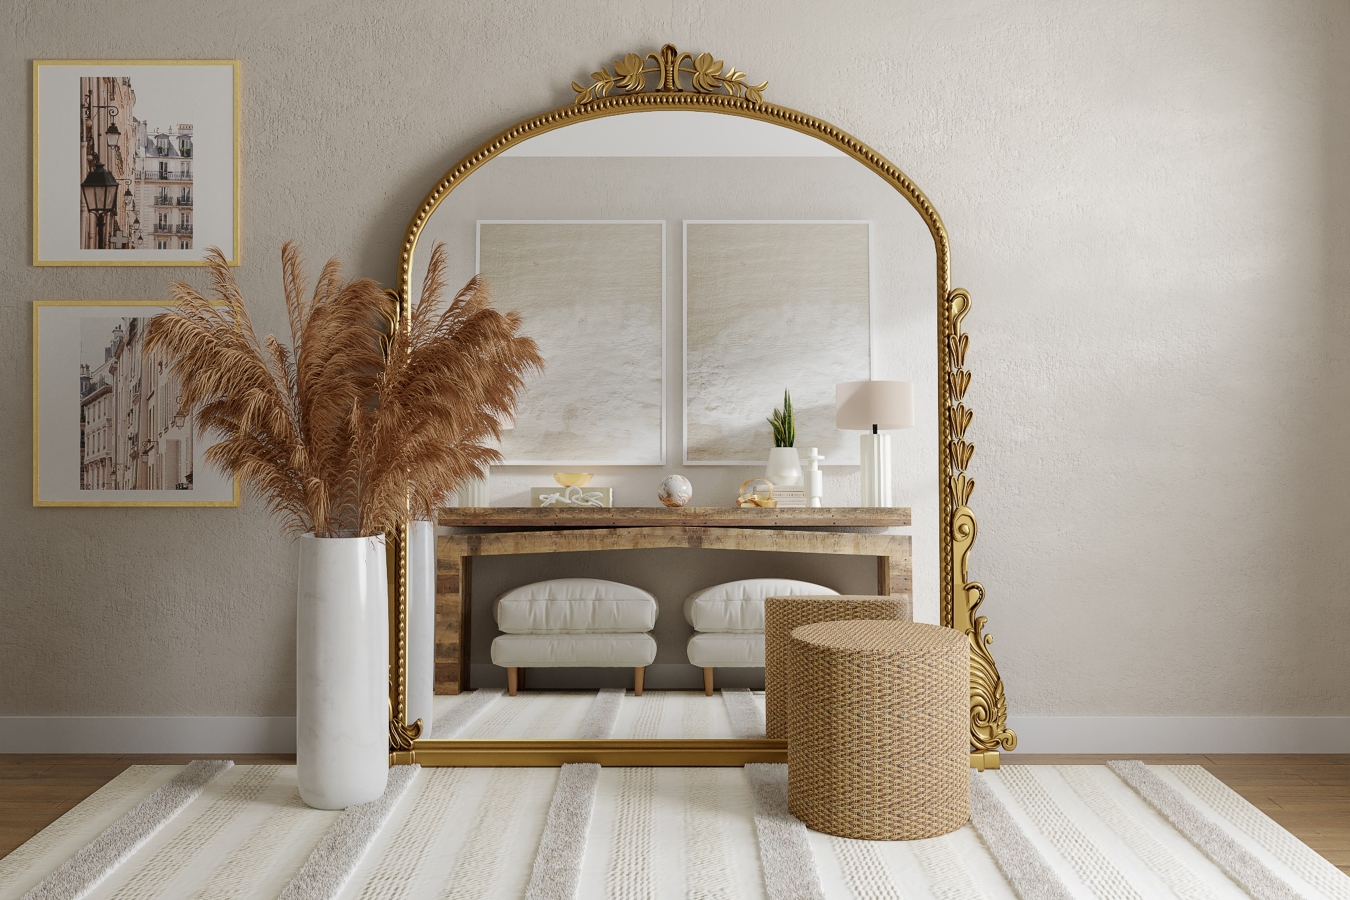 Beże, biele i złoto są najczęściej spotykanymi odcieniami we wnętrzach w stylu modern classic.